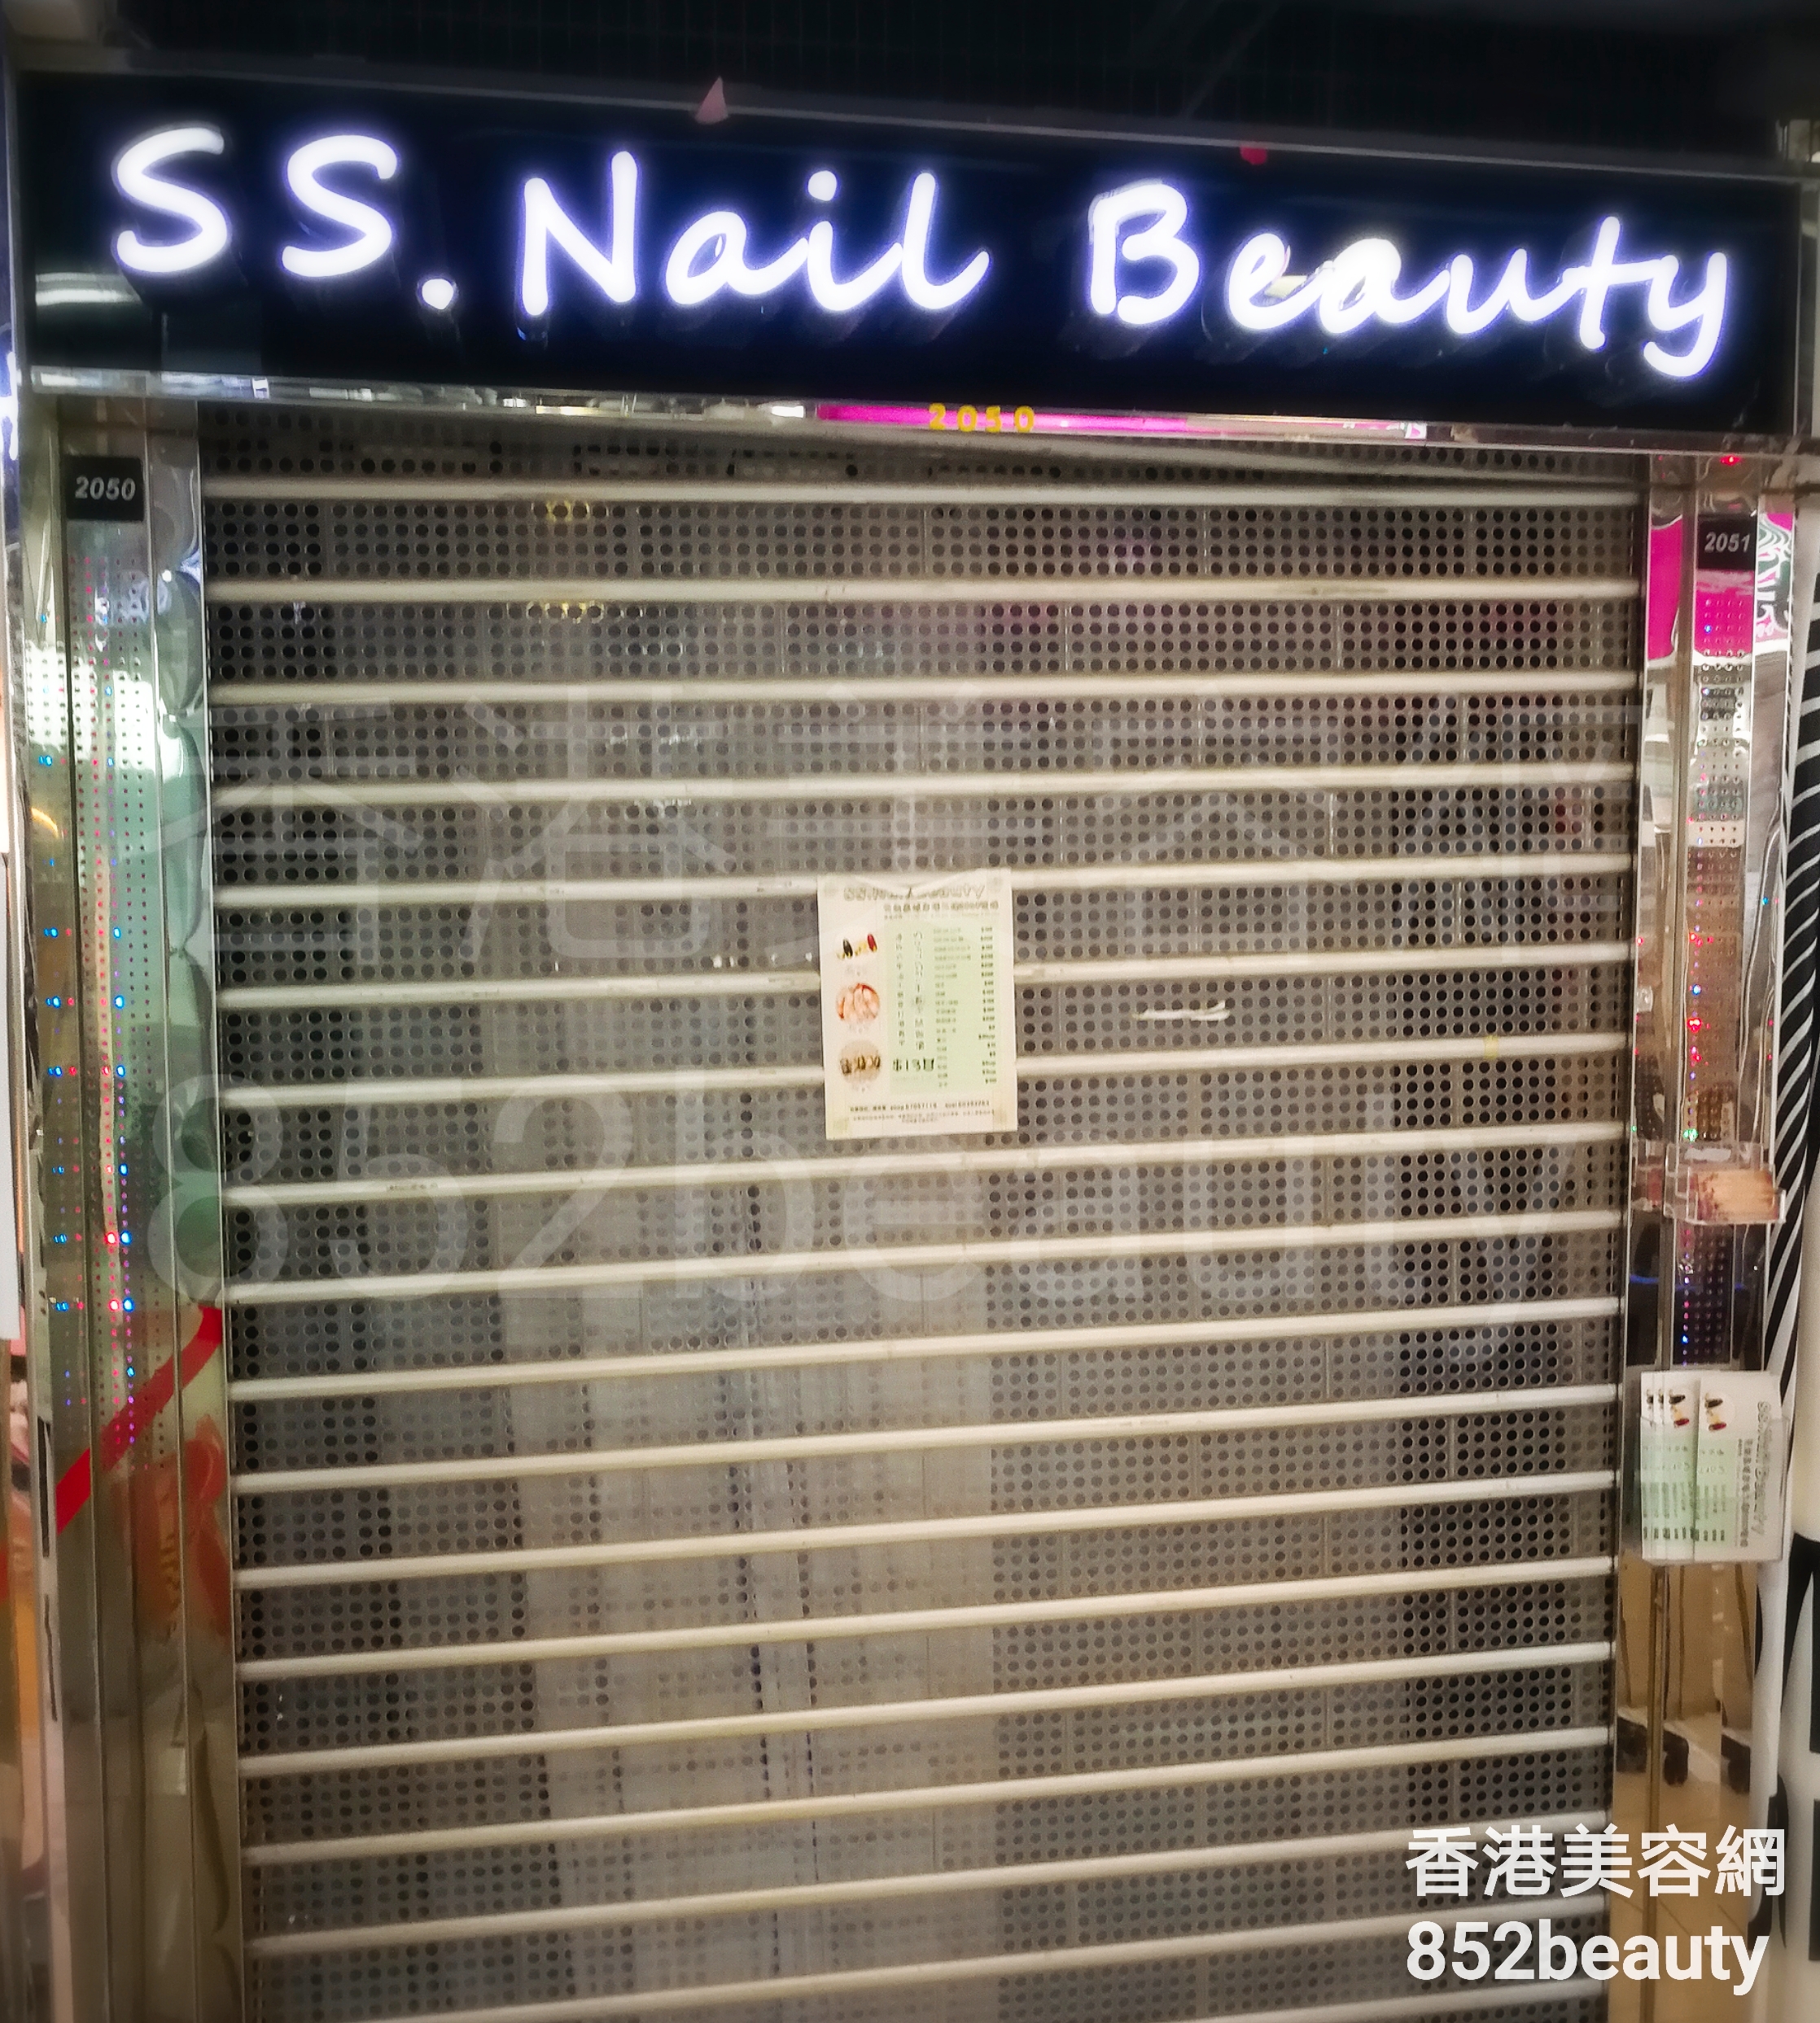 : SS. Nail Beauty